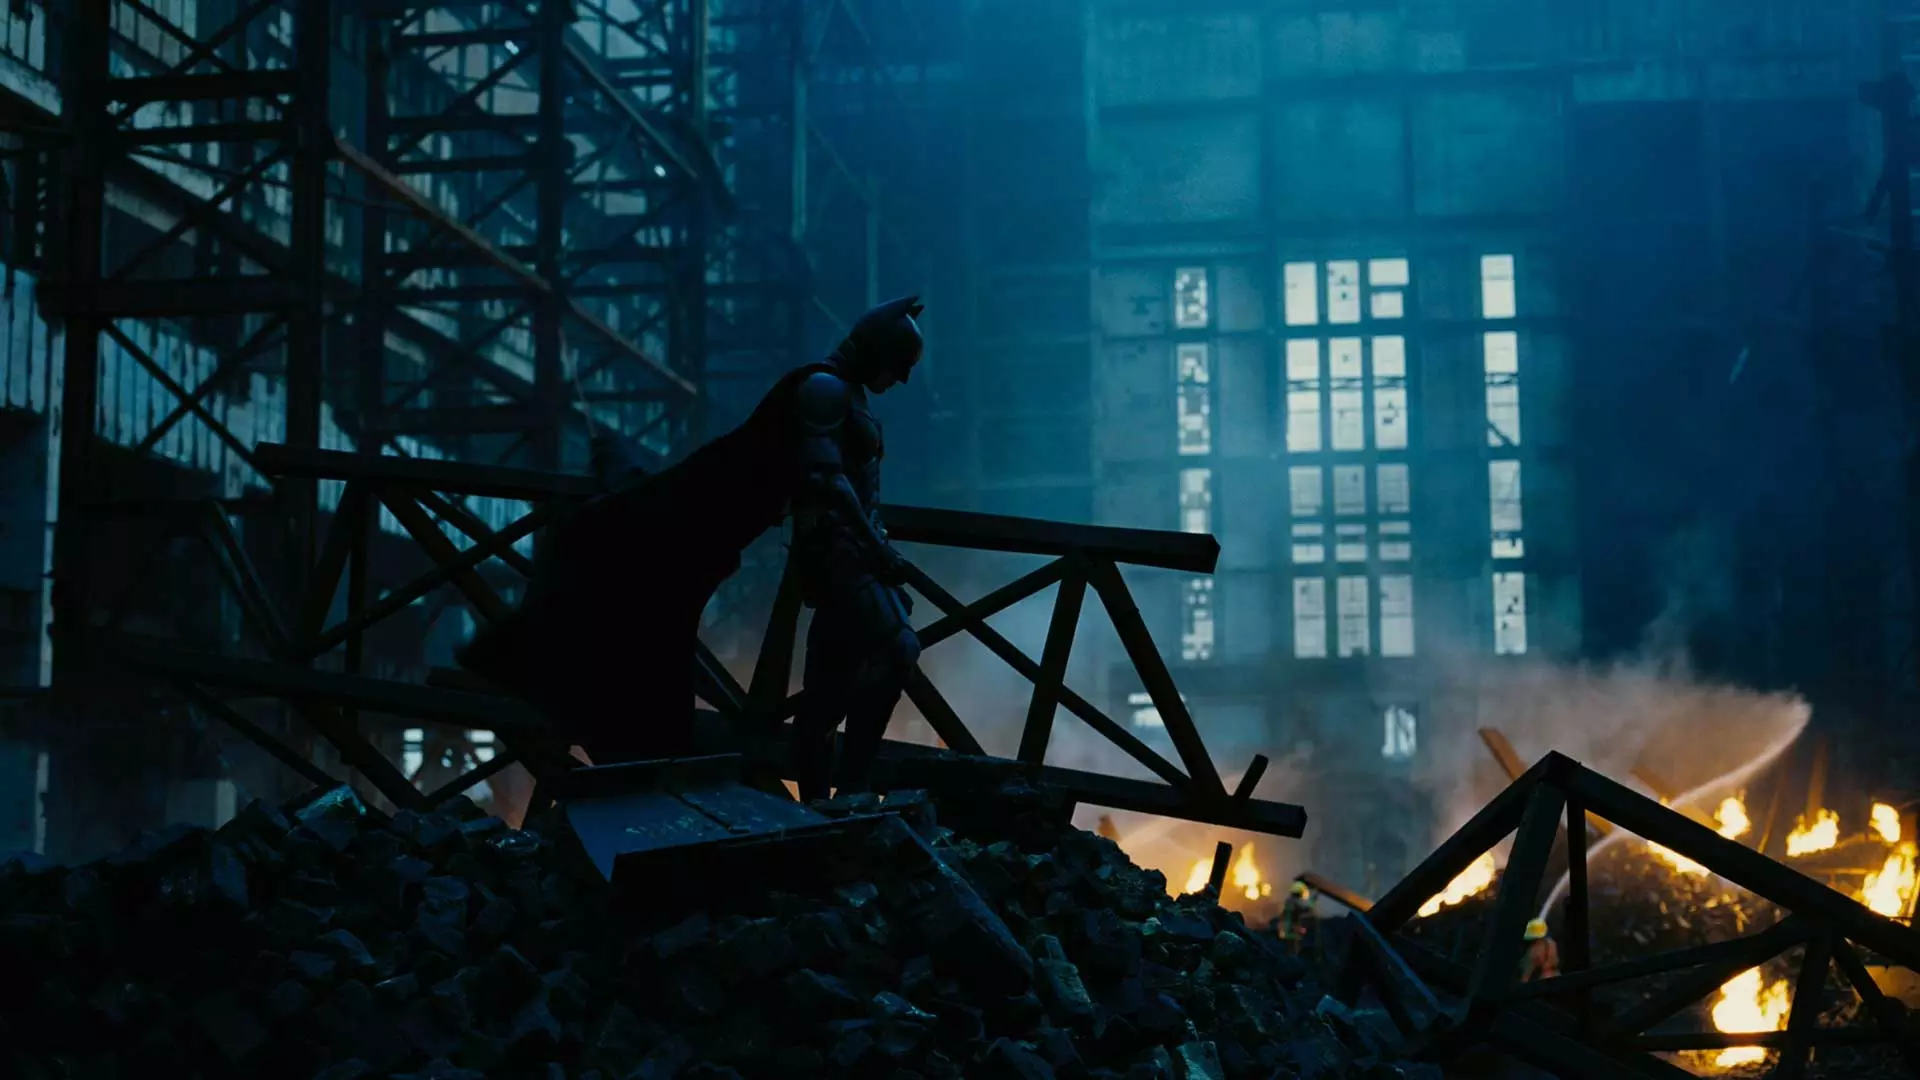 «قهرمانی که لیاقت آن را داشتیم» در فیلم The Dark Knight کریستوفر نولان، یکی از بهترین فیلم های ابرقهرمانی تاریخ سینما